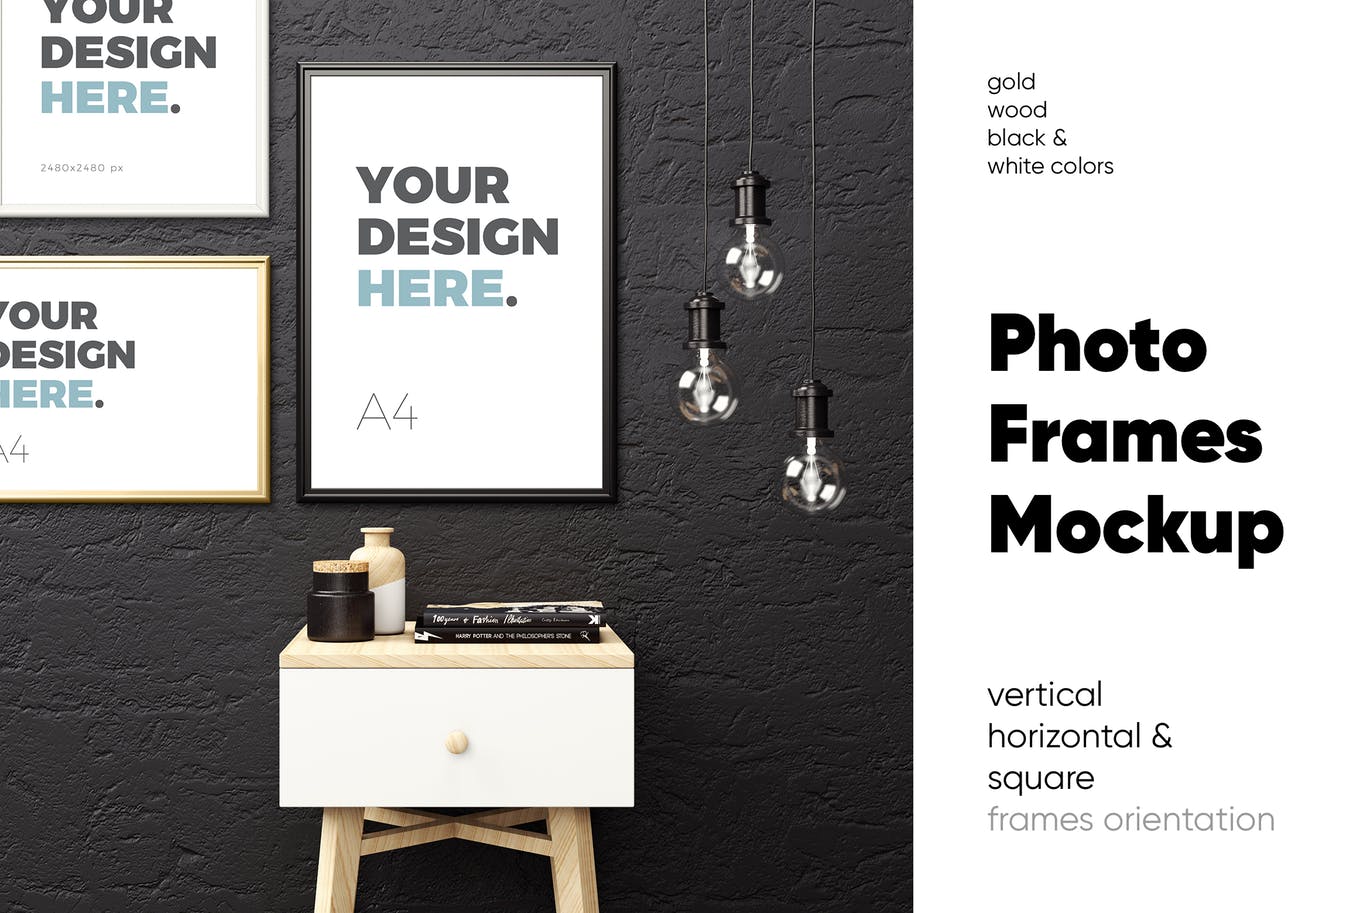 版画/海报/照片/艺术品展示样机第一素材精选模板v2 Photo Frames Mockup插图